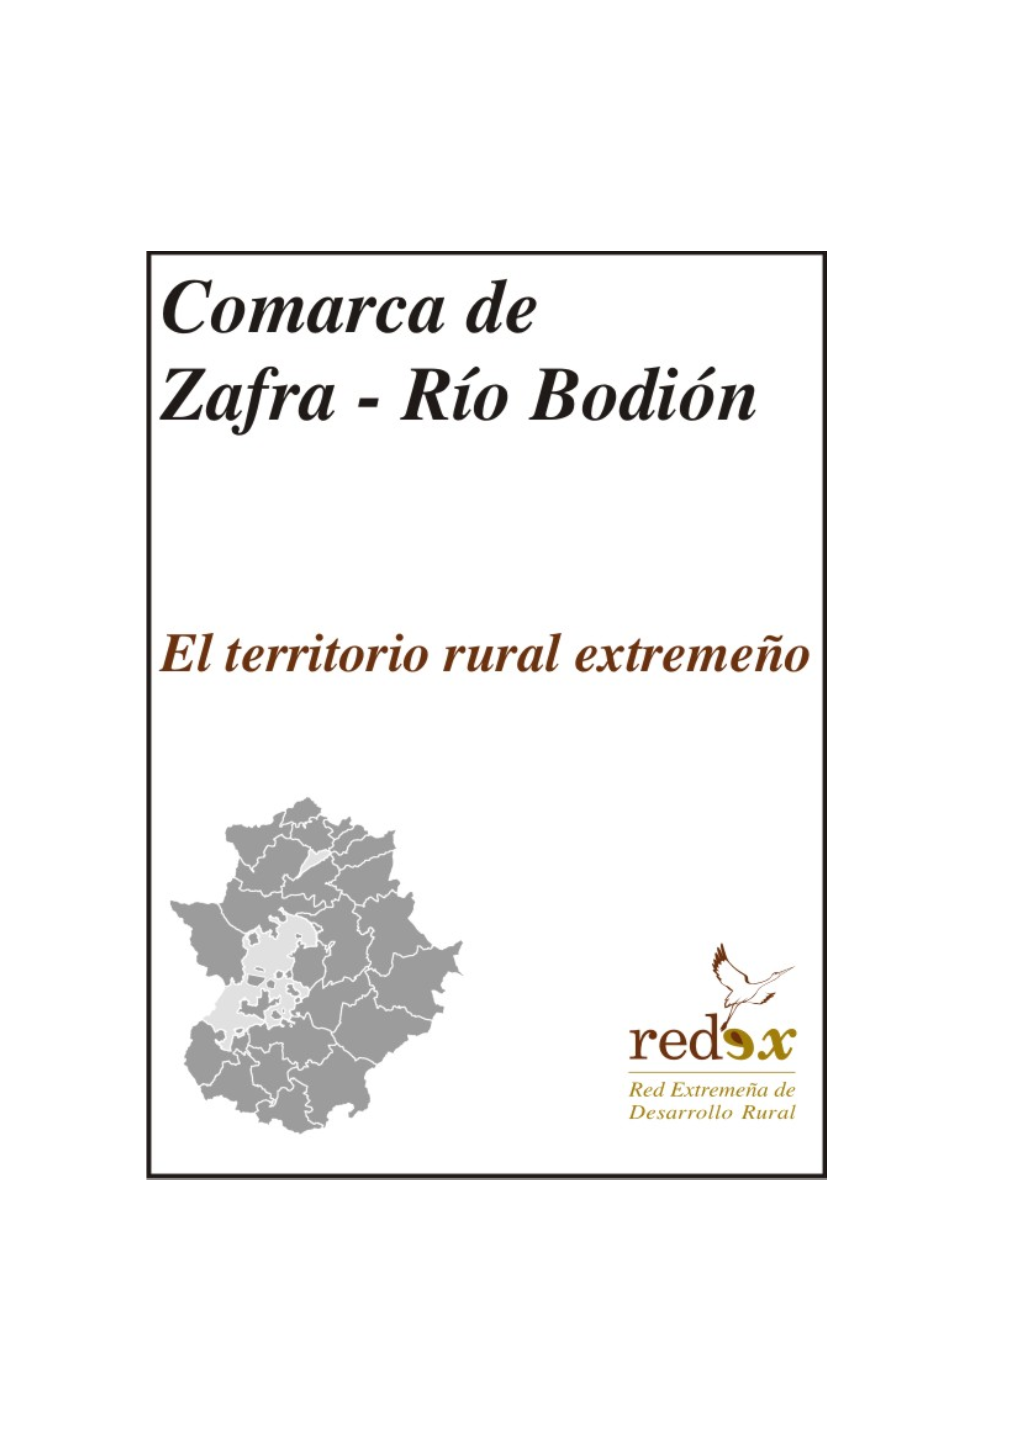 Comarca De Zafra Río Bodión Es De 1.112,16 Km2, Supone El 2,67 % De La Superficie Regional Y Se Encuentra Constituida Por 15 Municipios